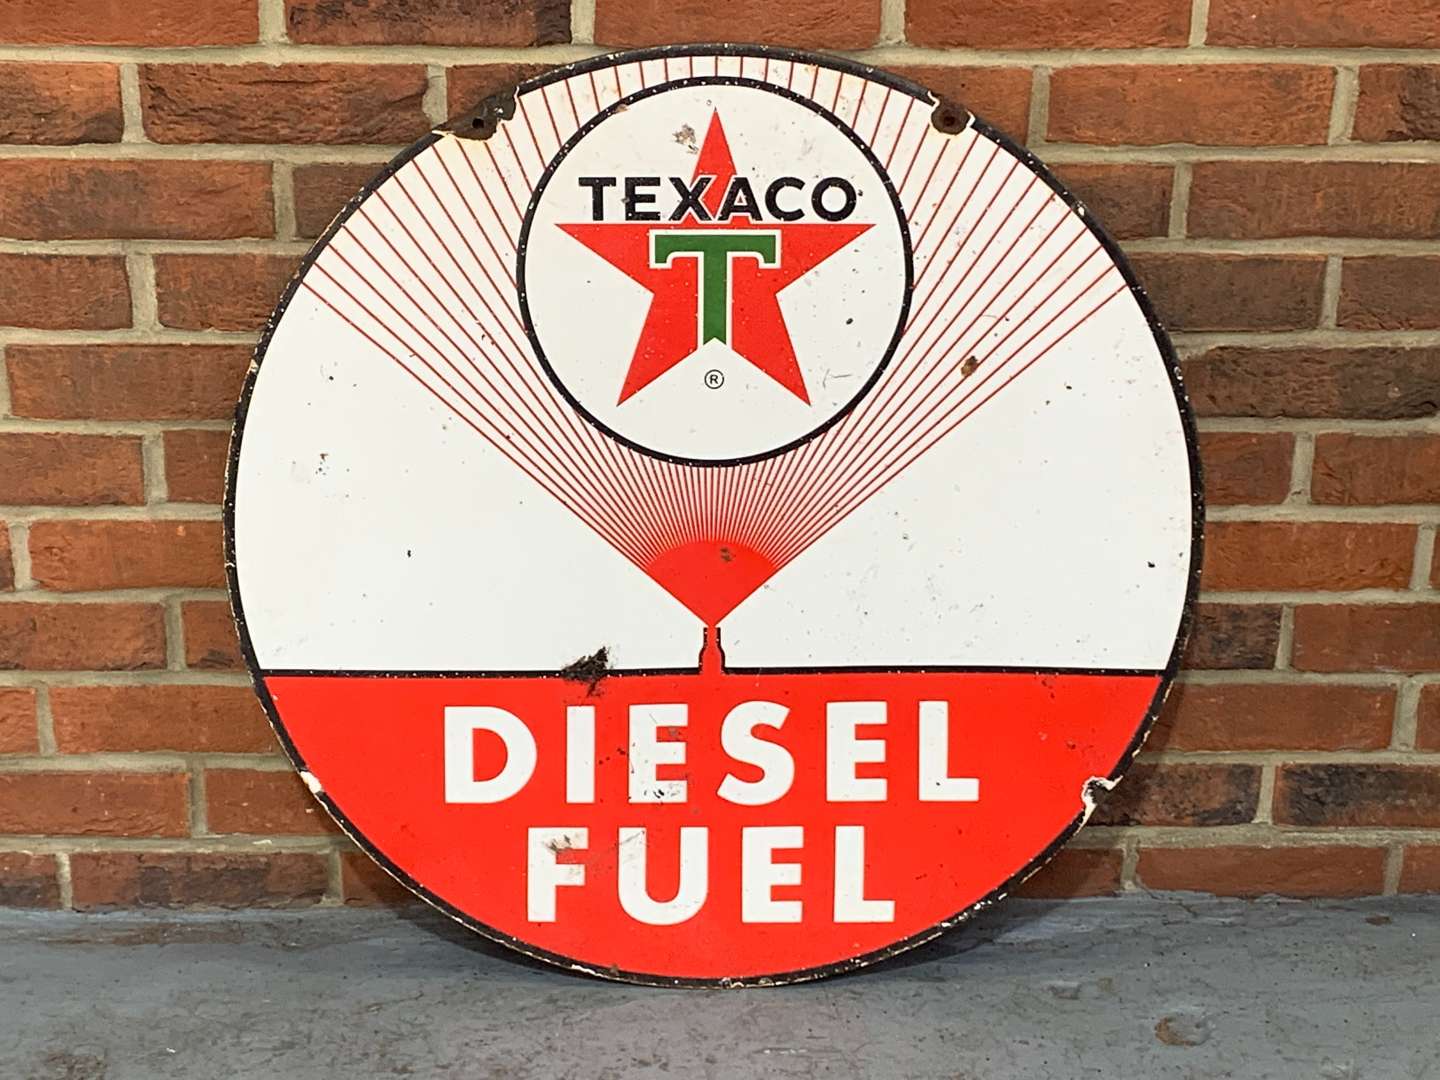 <p>Texaco Diesel Fuel Circular Enamel Sign</p>